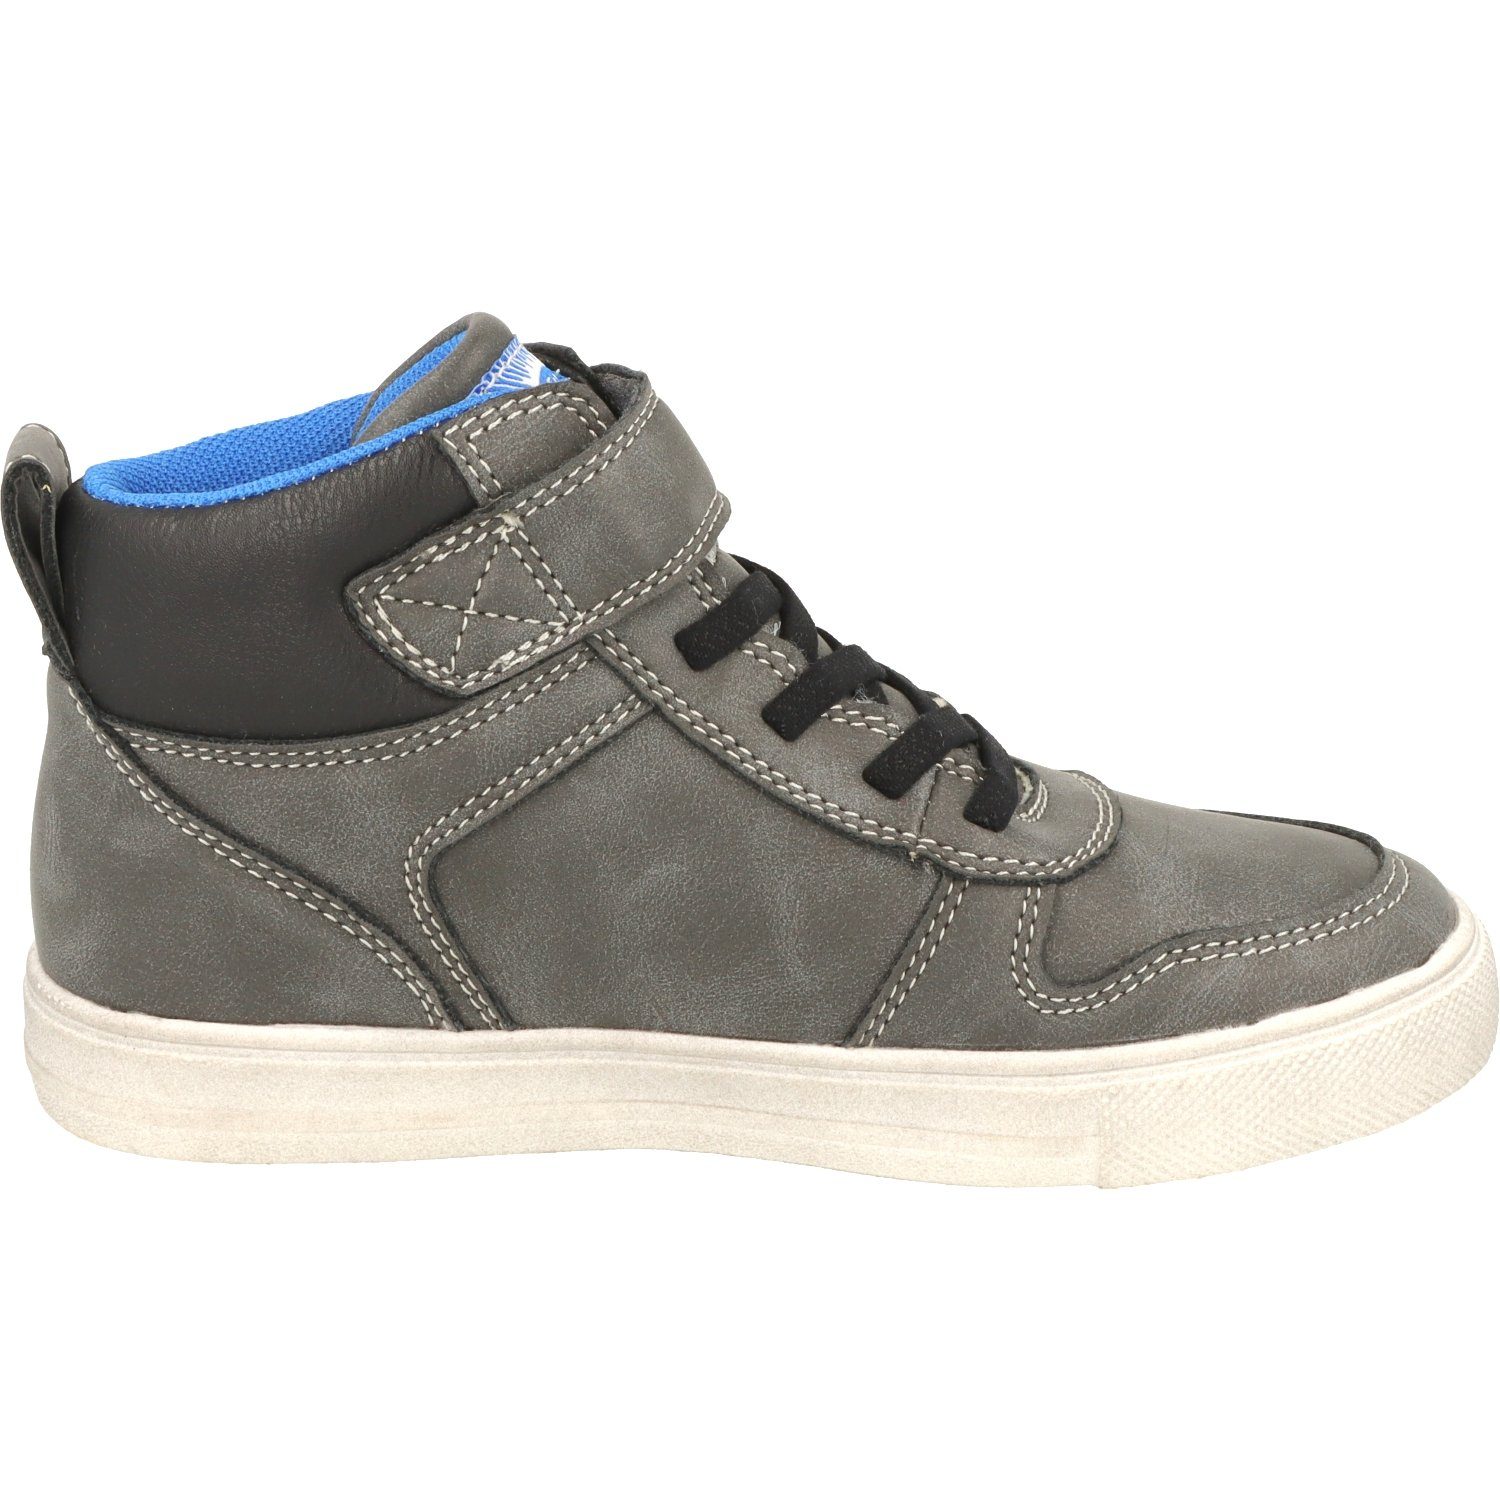 Schuhe Hi-Top Sneaker Wasserabweisend Dk.Grey 451-074 Indigo Jungen Schnürschuhe